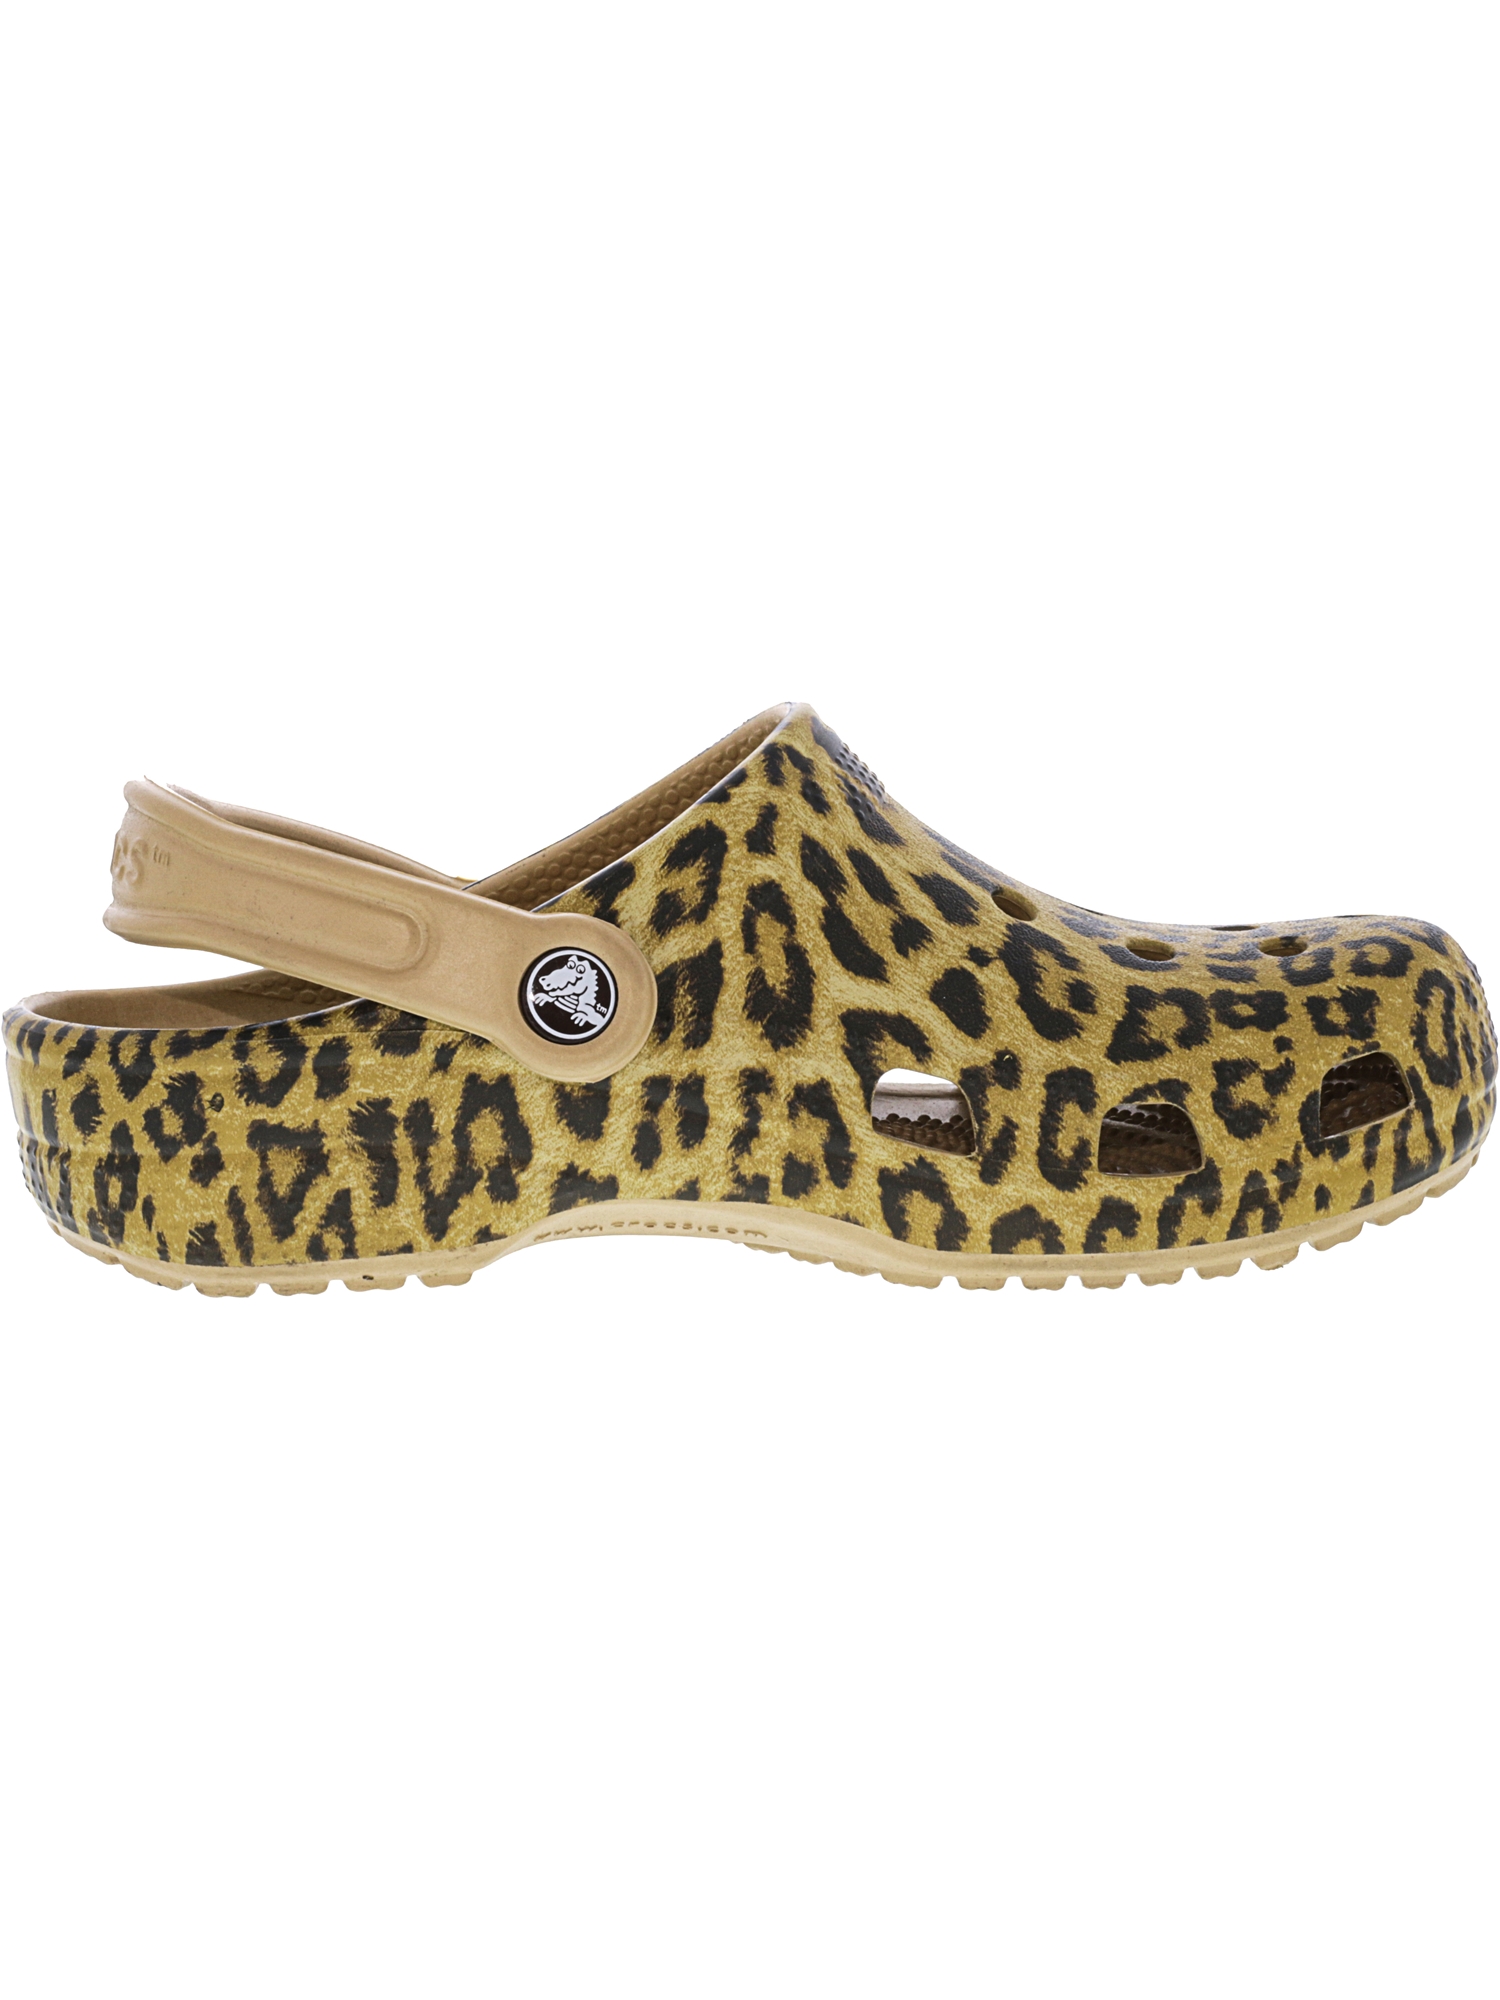 Crocs Classic Leopard Iii Clog Gold Clogs - 7M / 5M | Walmart Canada